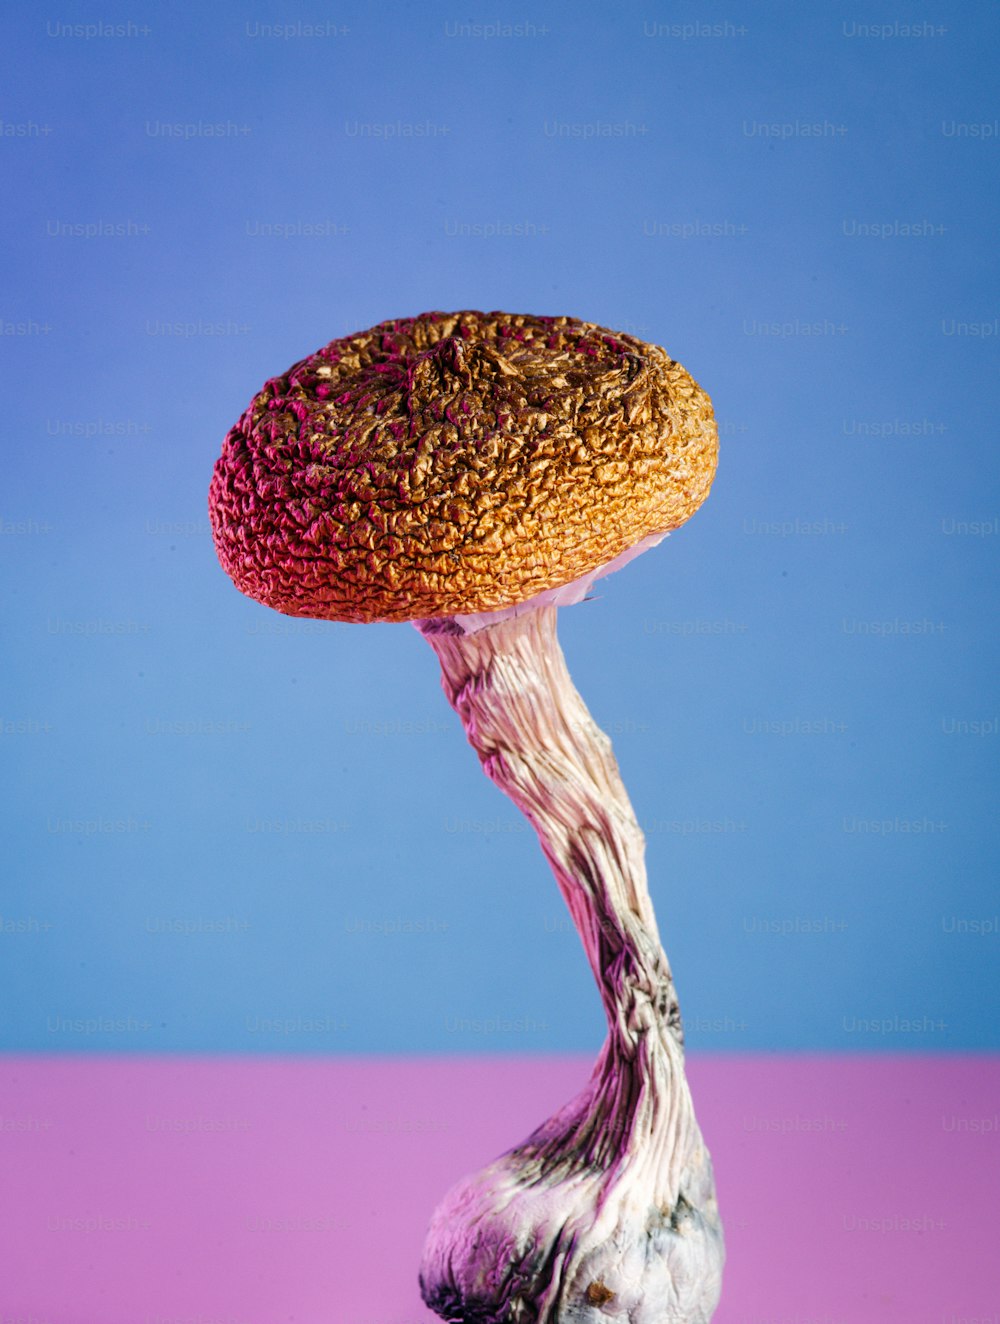 Un primo piano di un fungo su uno sfondo rosa e blu